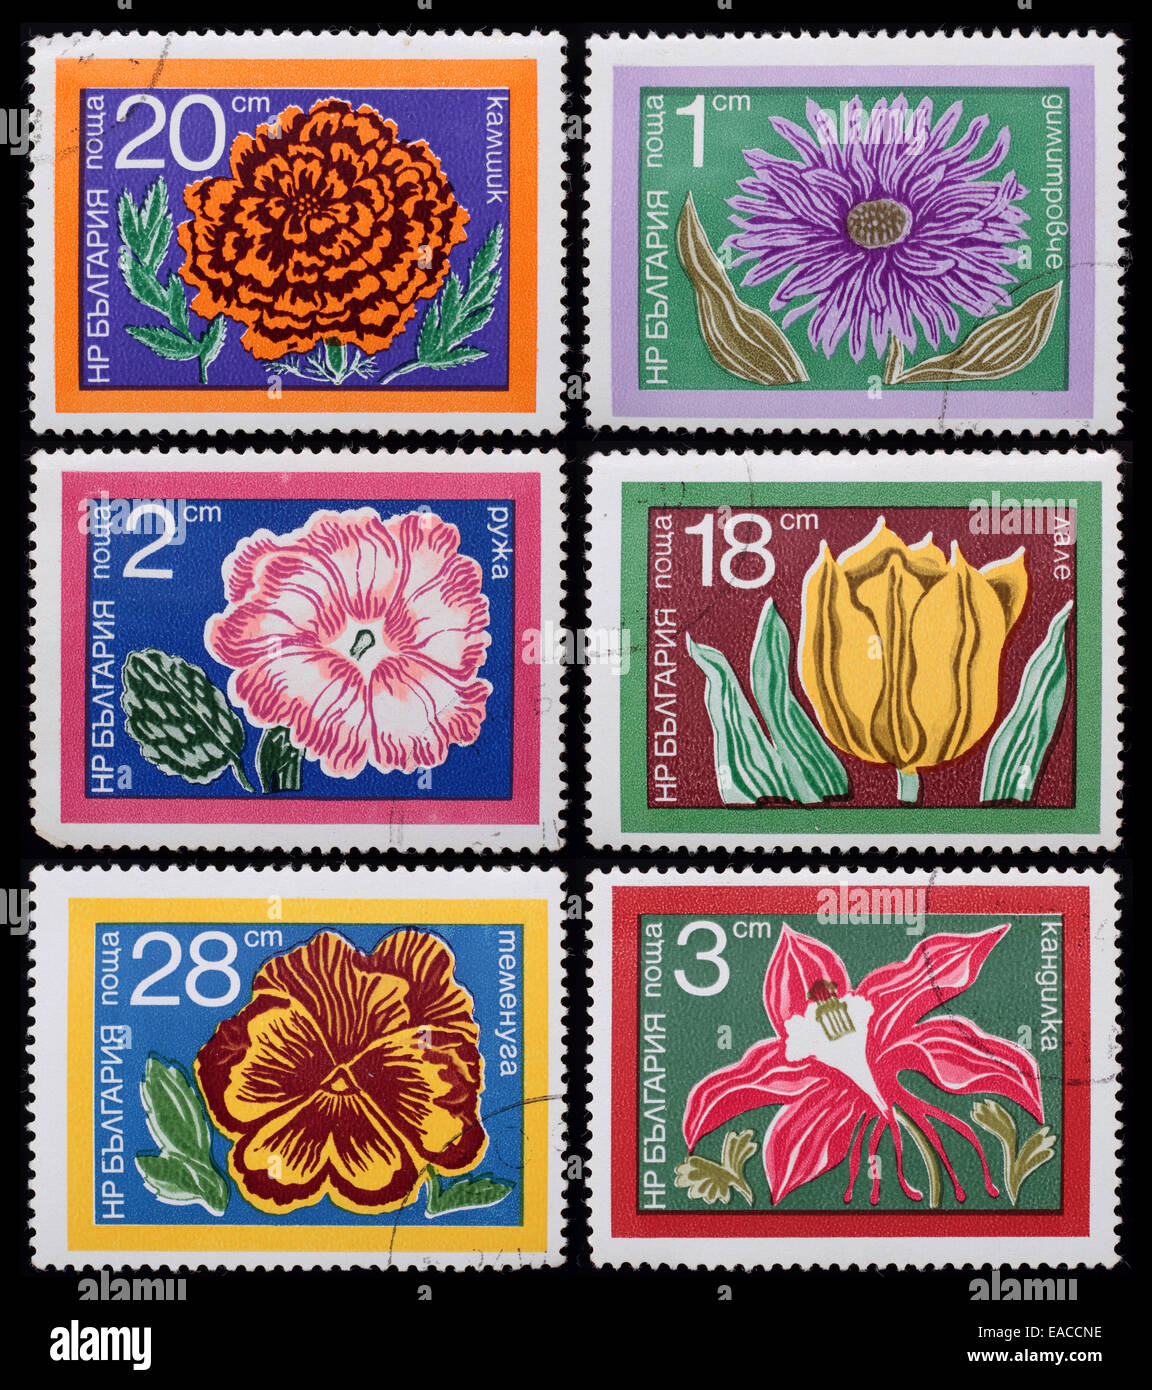 Bulgarien - circa 1978: eine Briefmarke gedruckt in Bulgarien zeigt Bild von Blumen, Serie Blumen, ca. 1978. Stockfoto